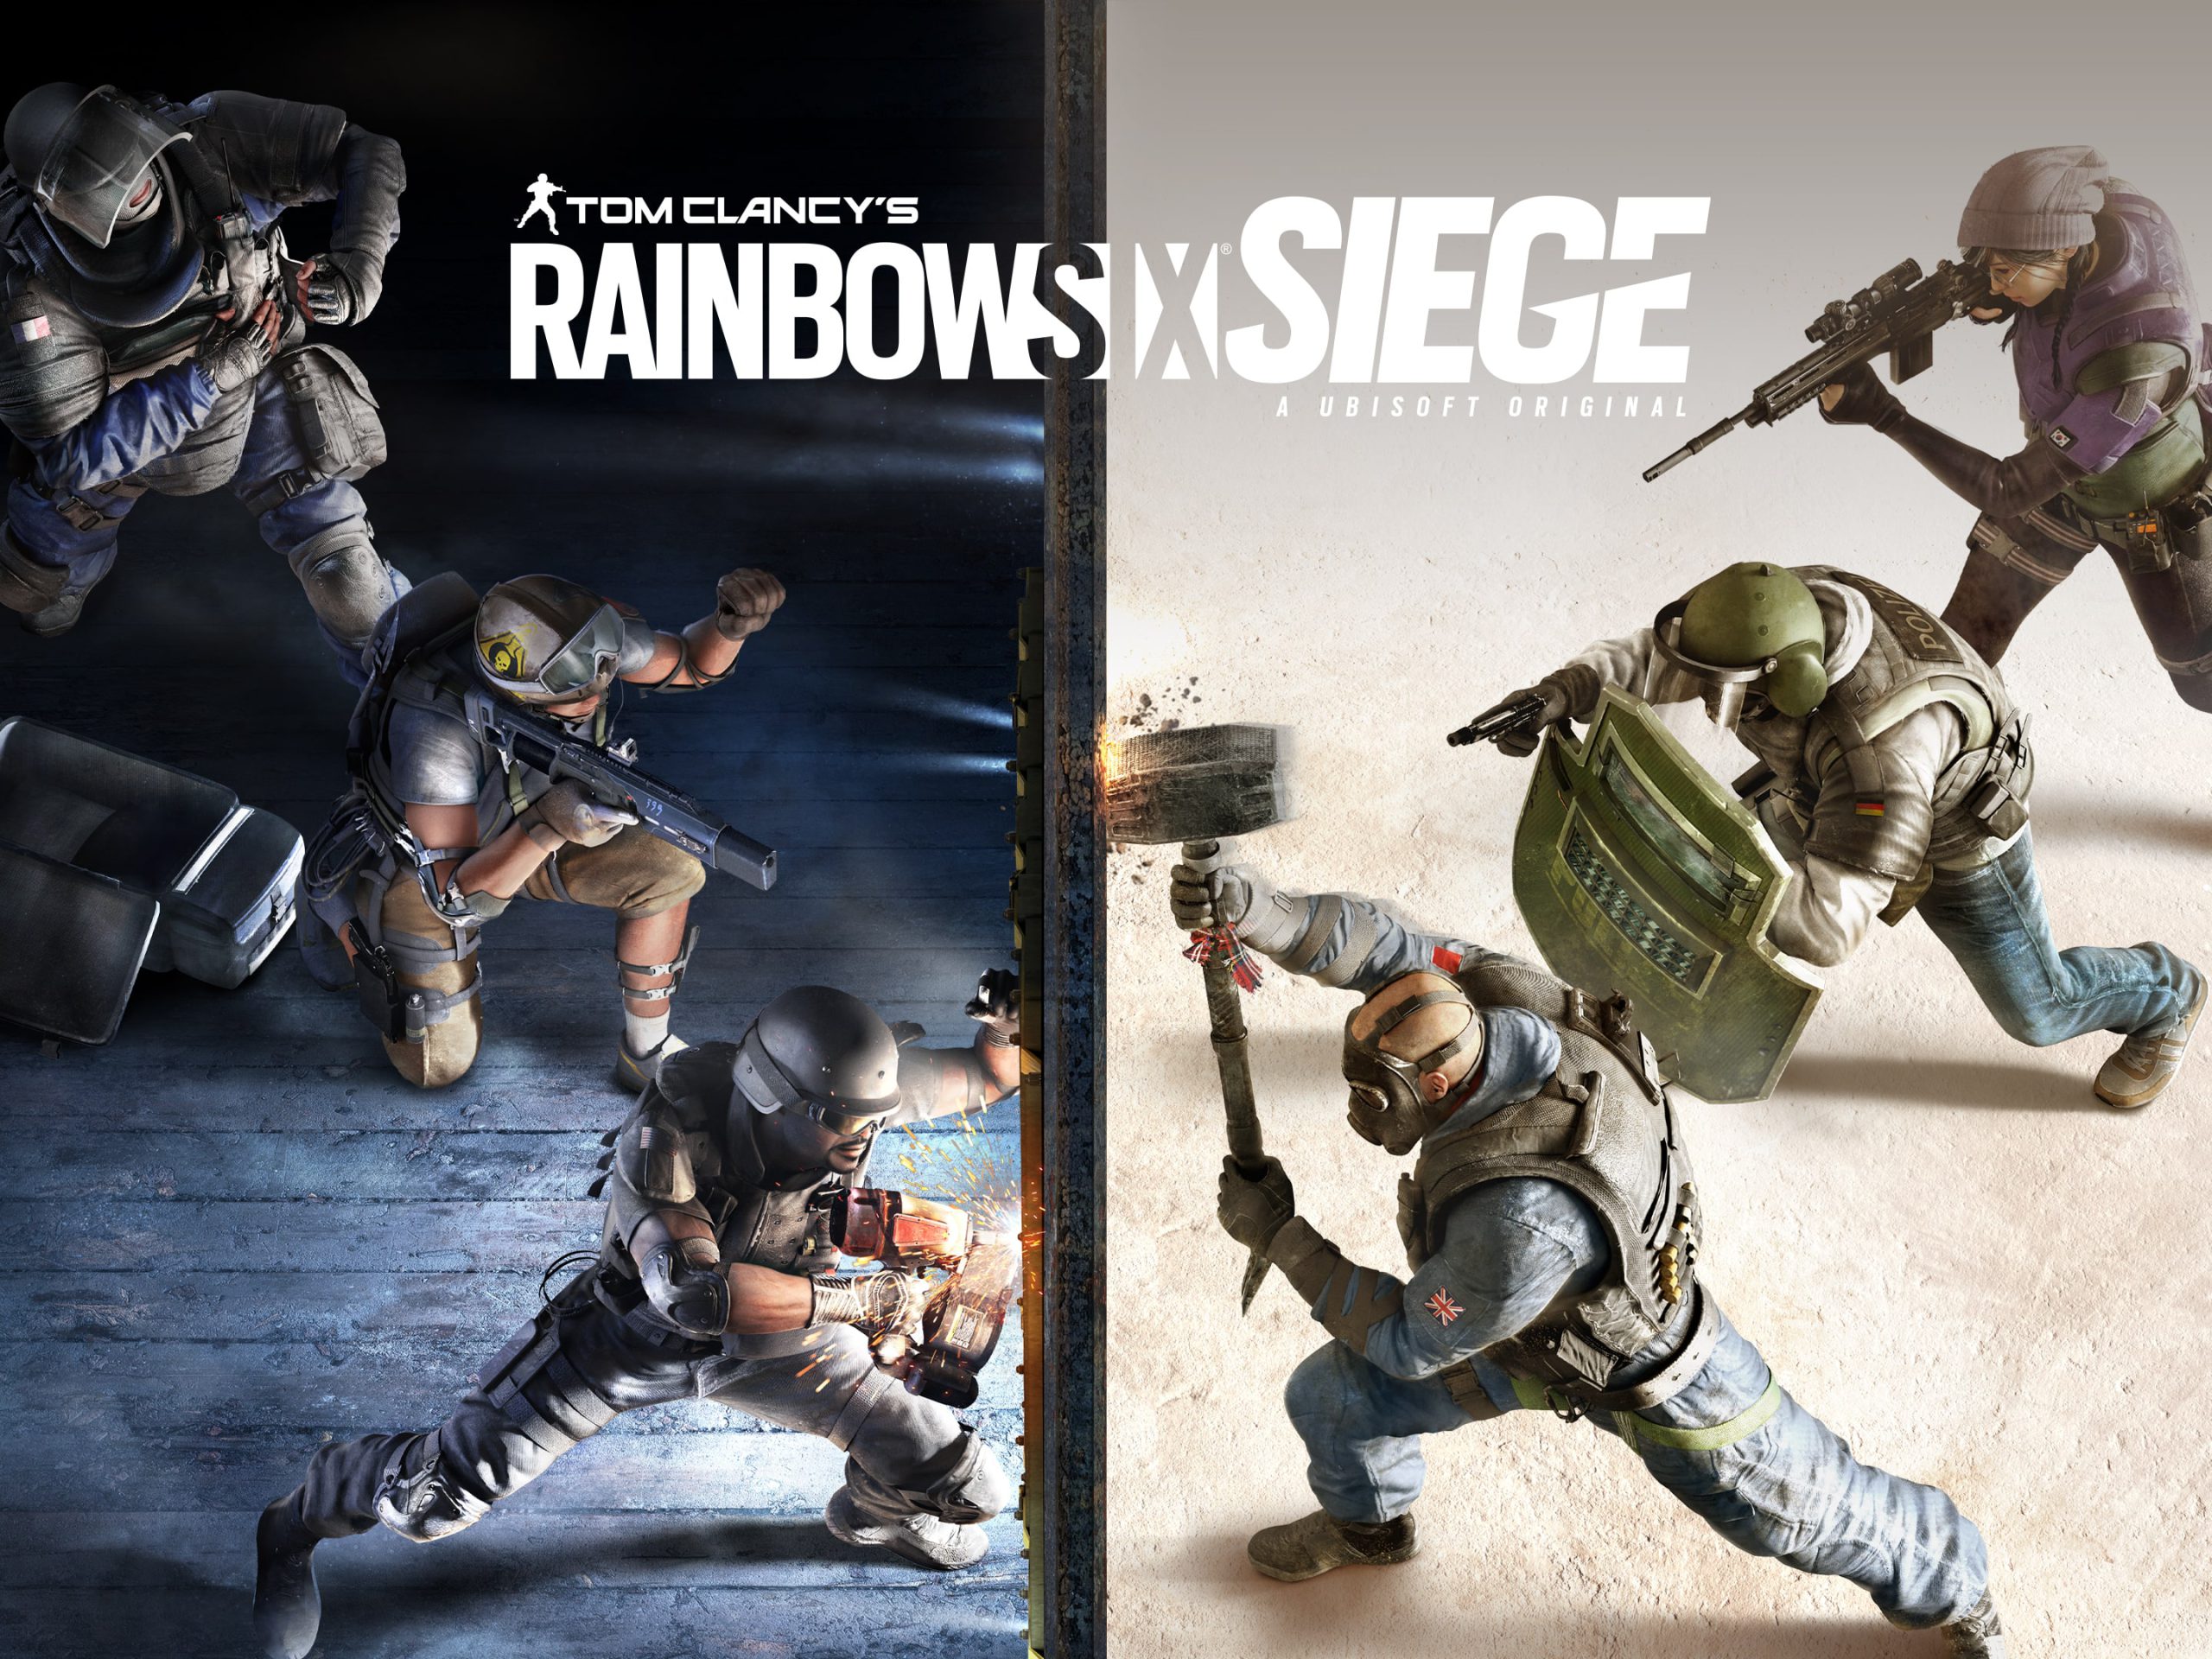 خرید بازی رینبوسیکس (Rainbow Six Siege)